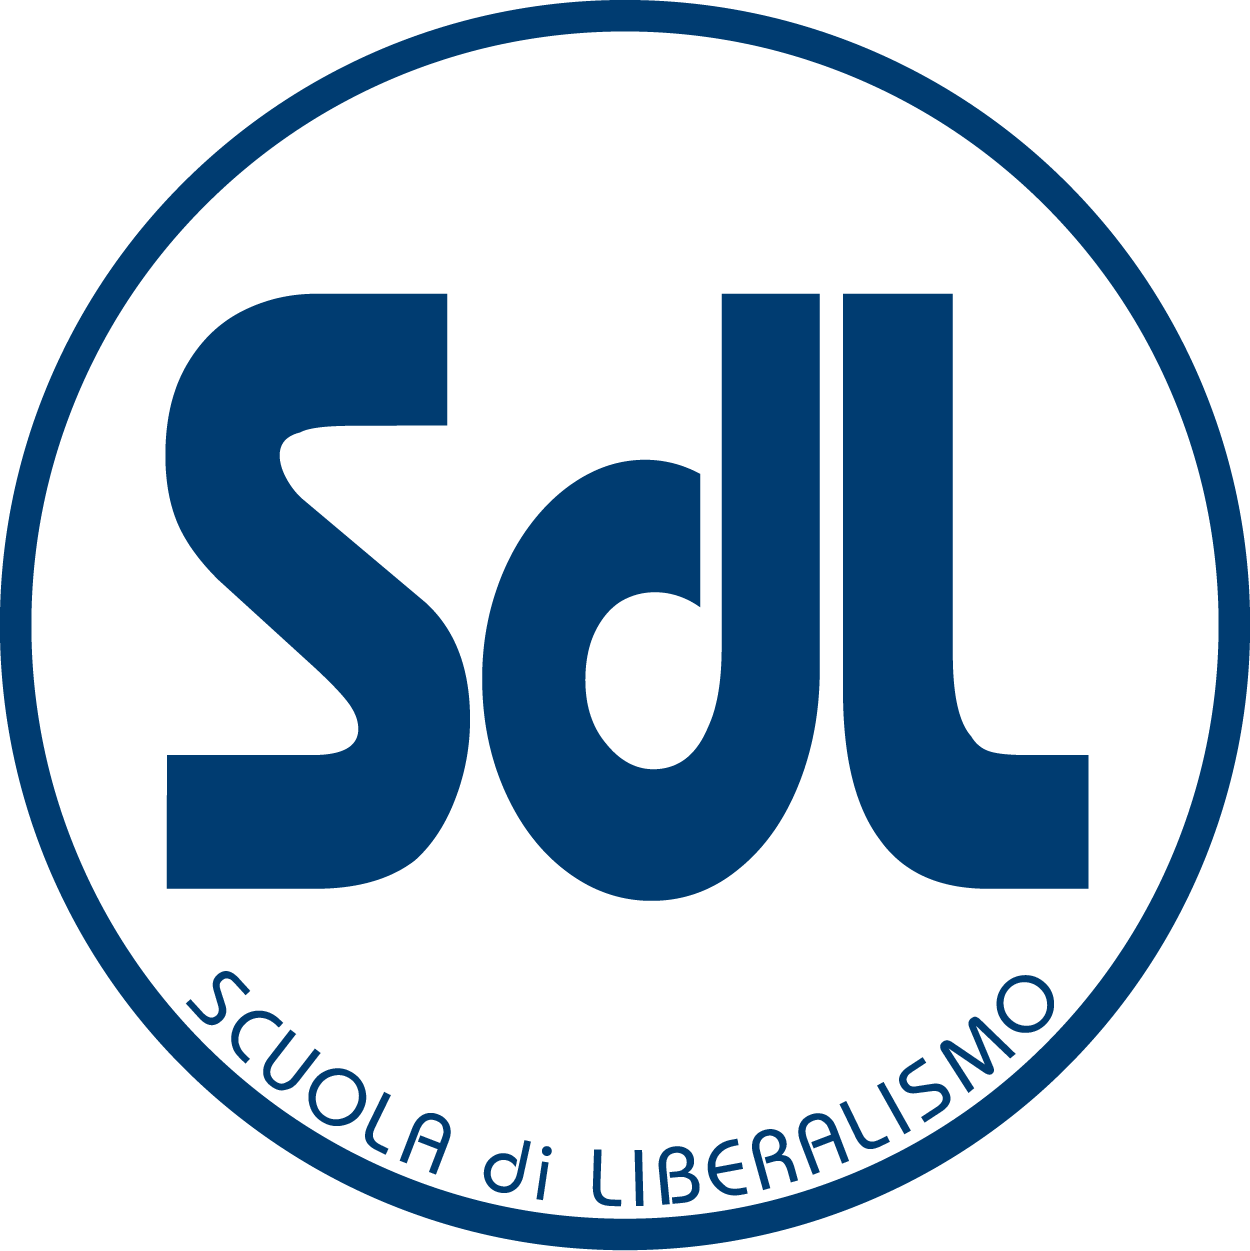 Inaugurazione Scuola di Liberalismo 2020 – Messina